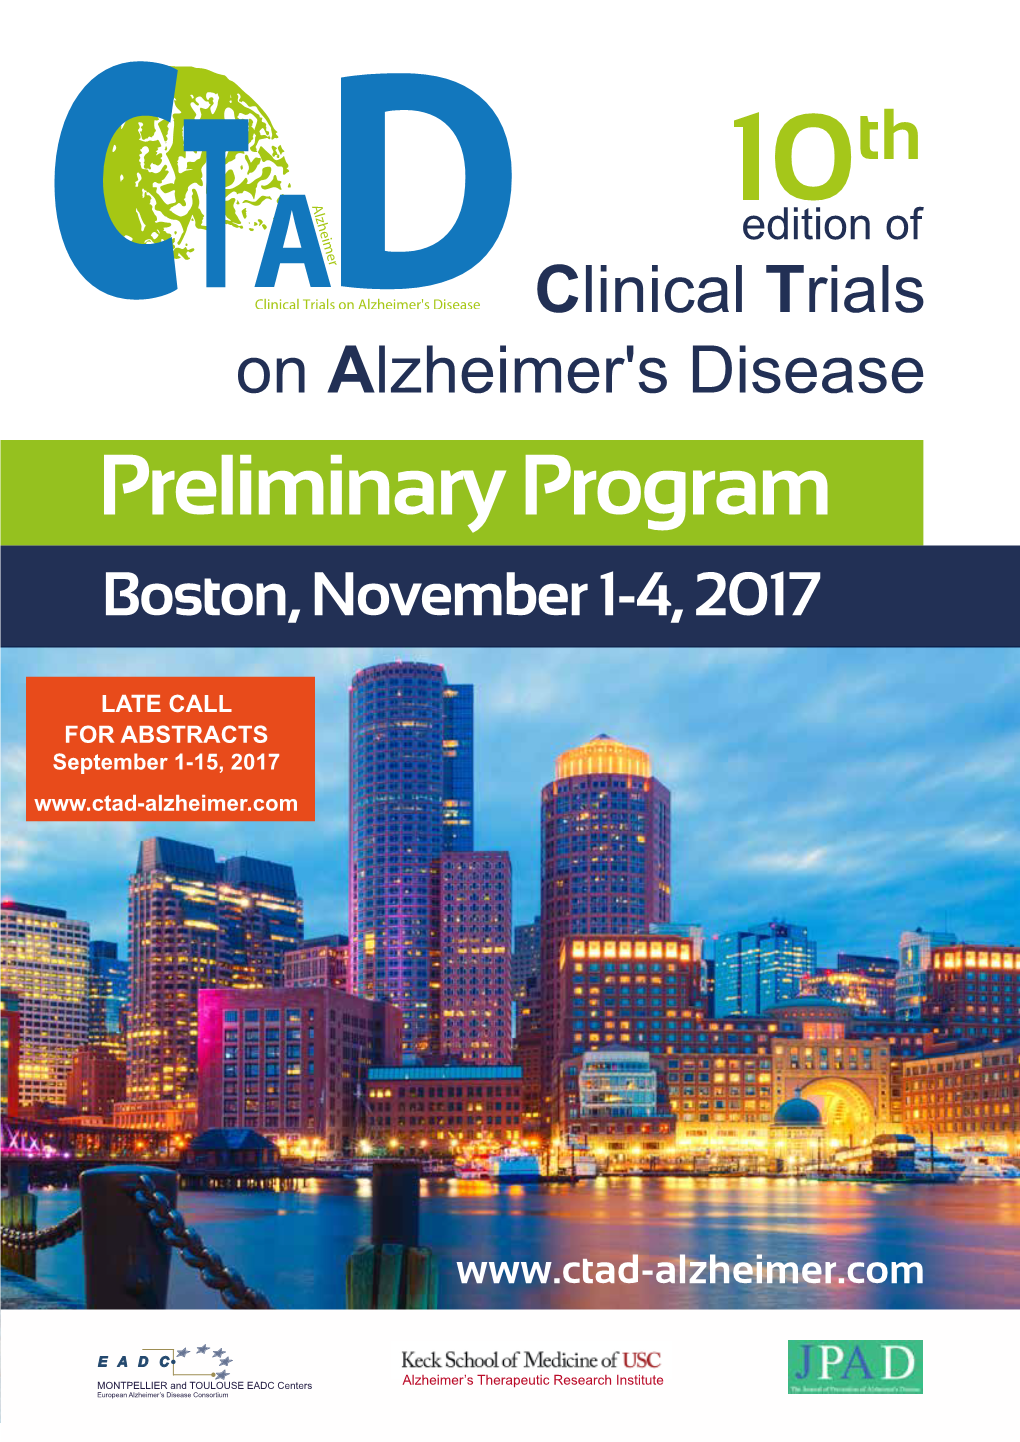 Preliminary Program Boston, November 1-4, 2017